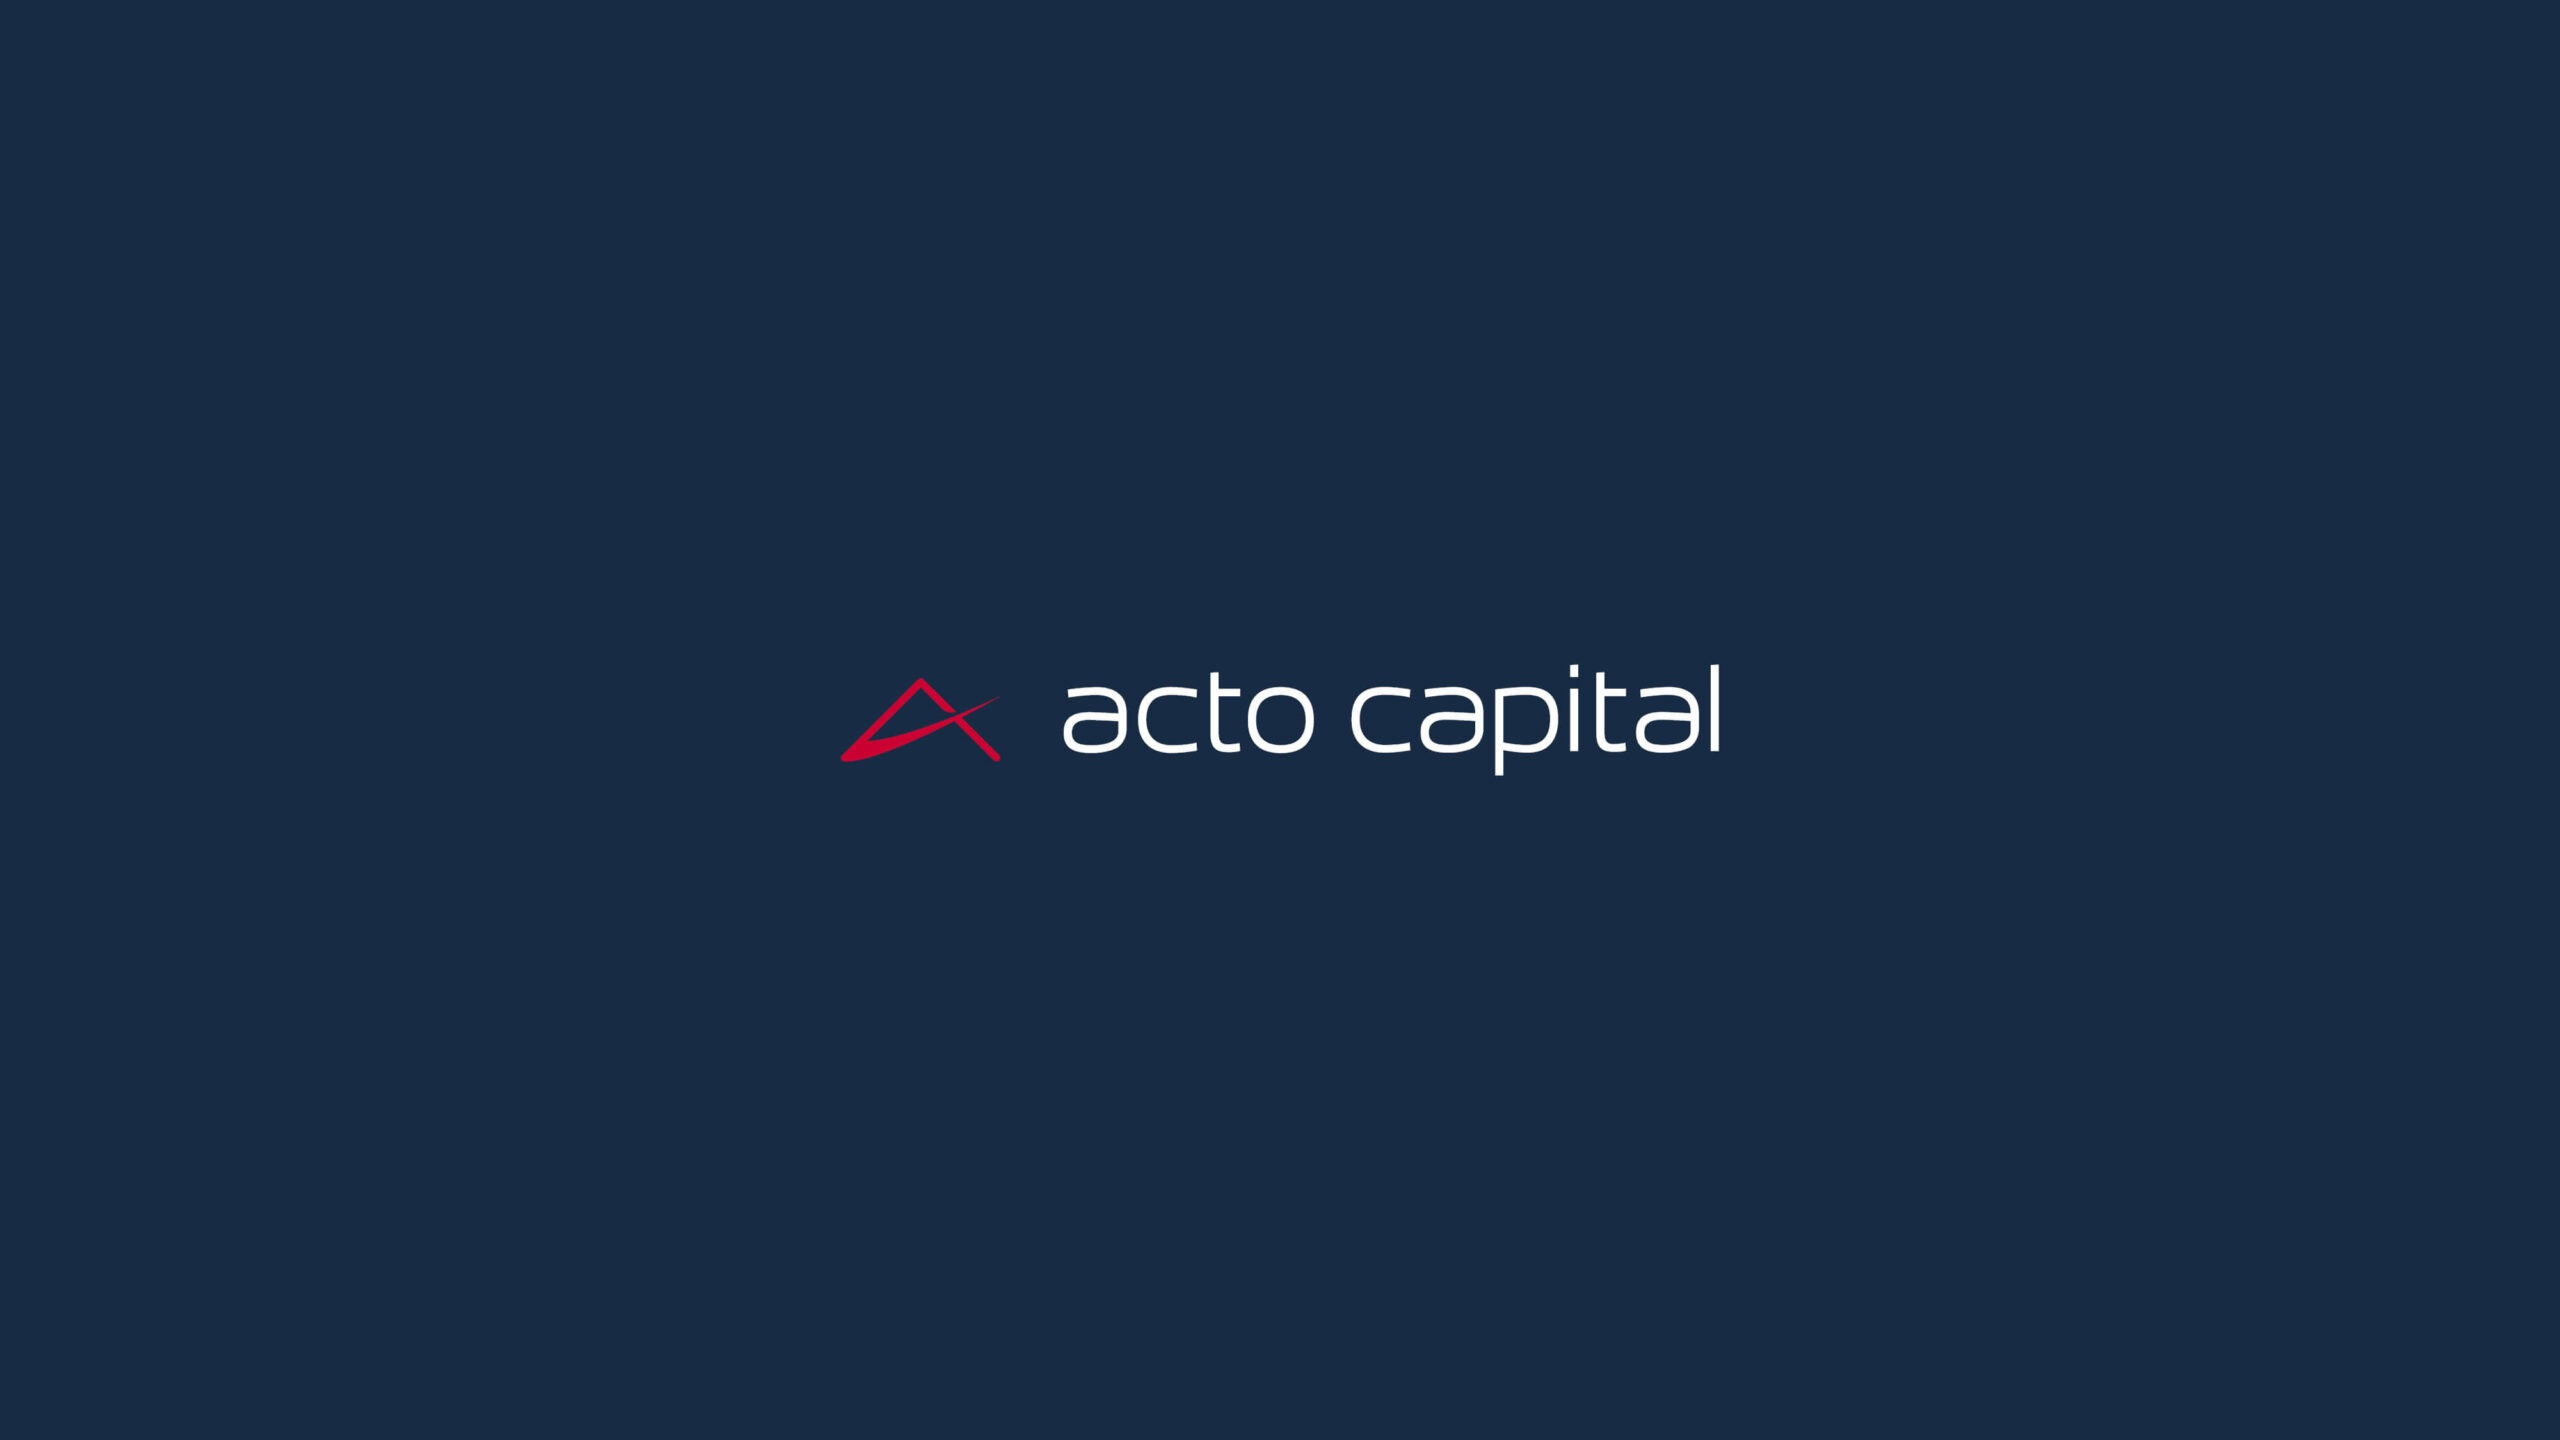 Acto Capital